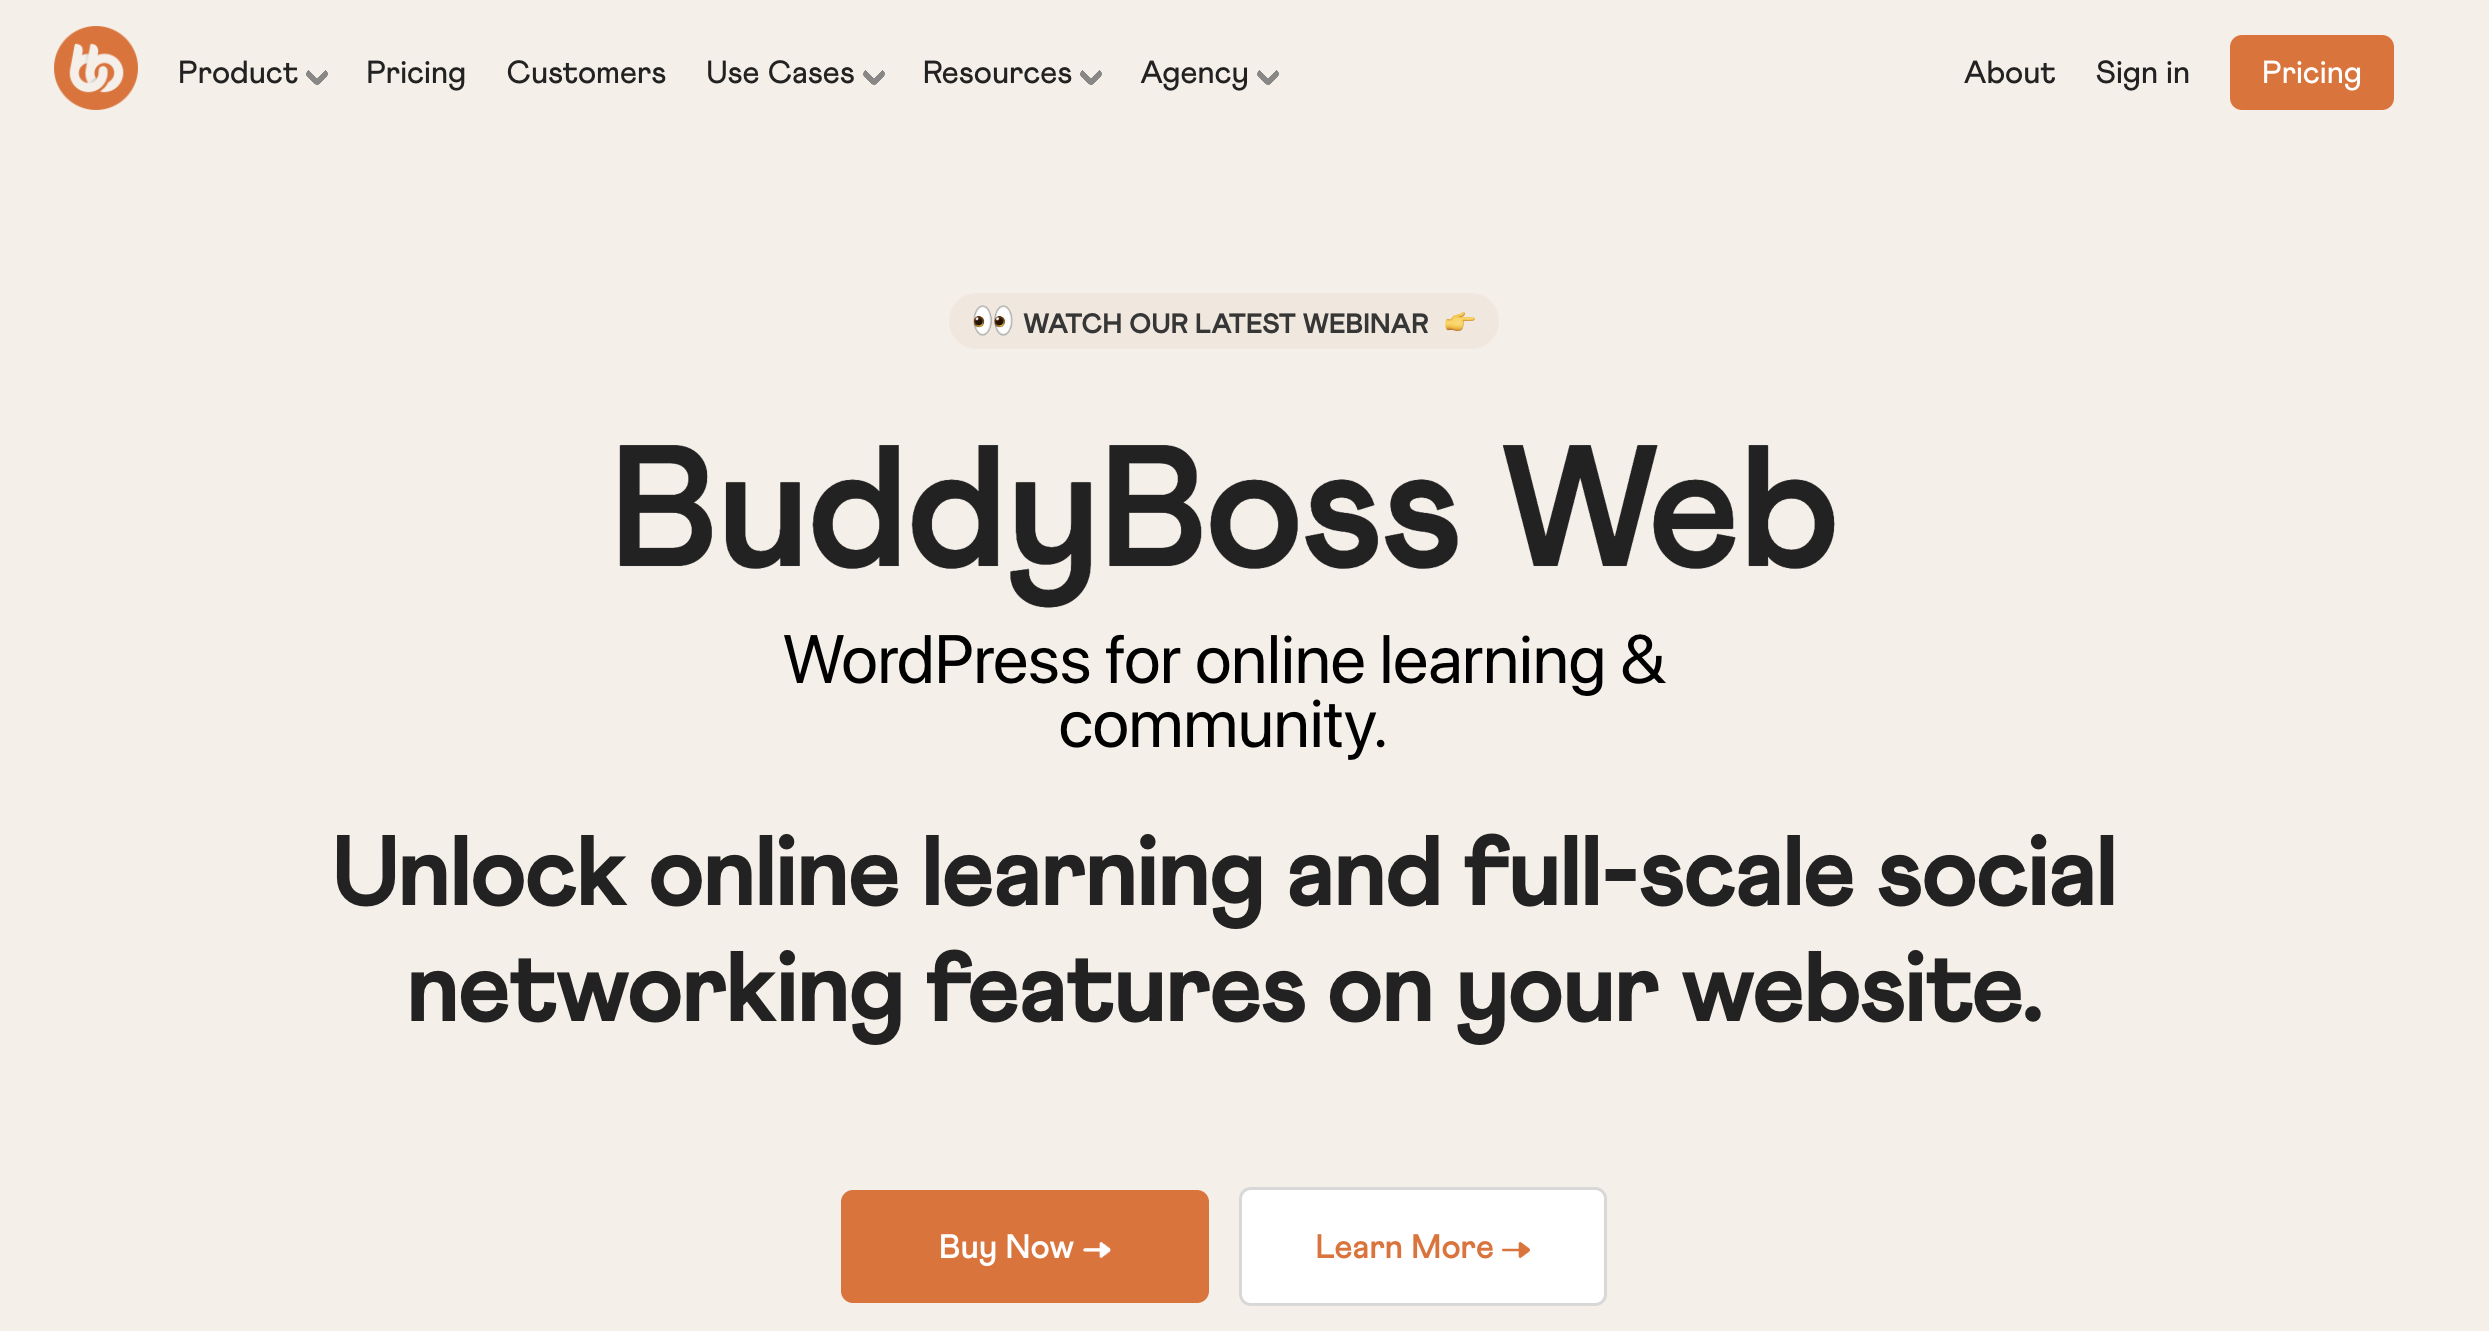 The BuddyBoss platform